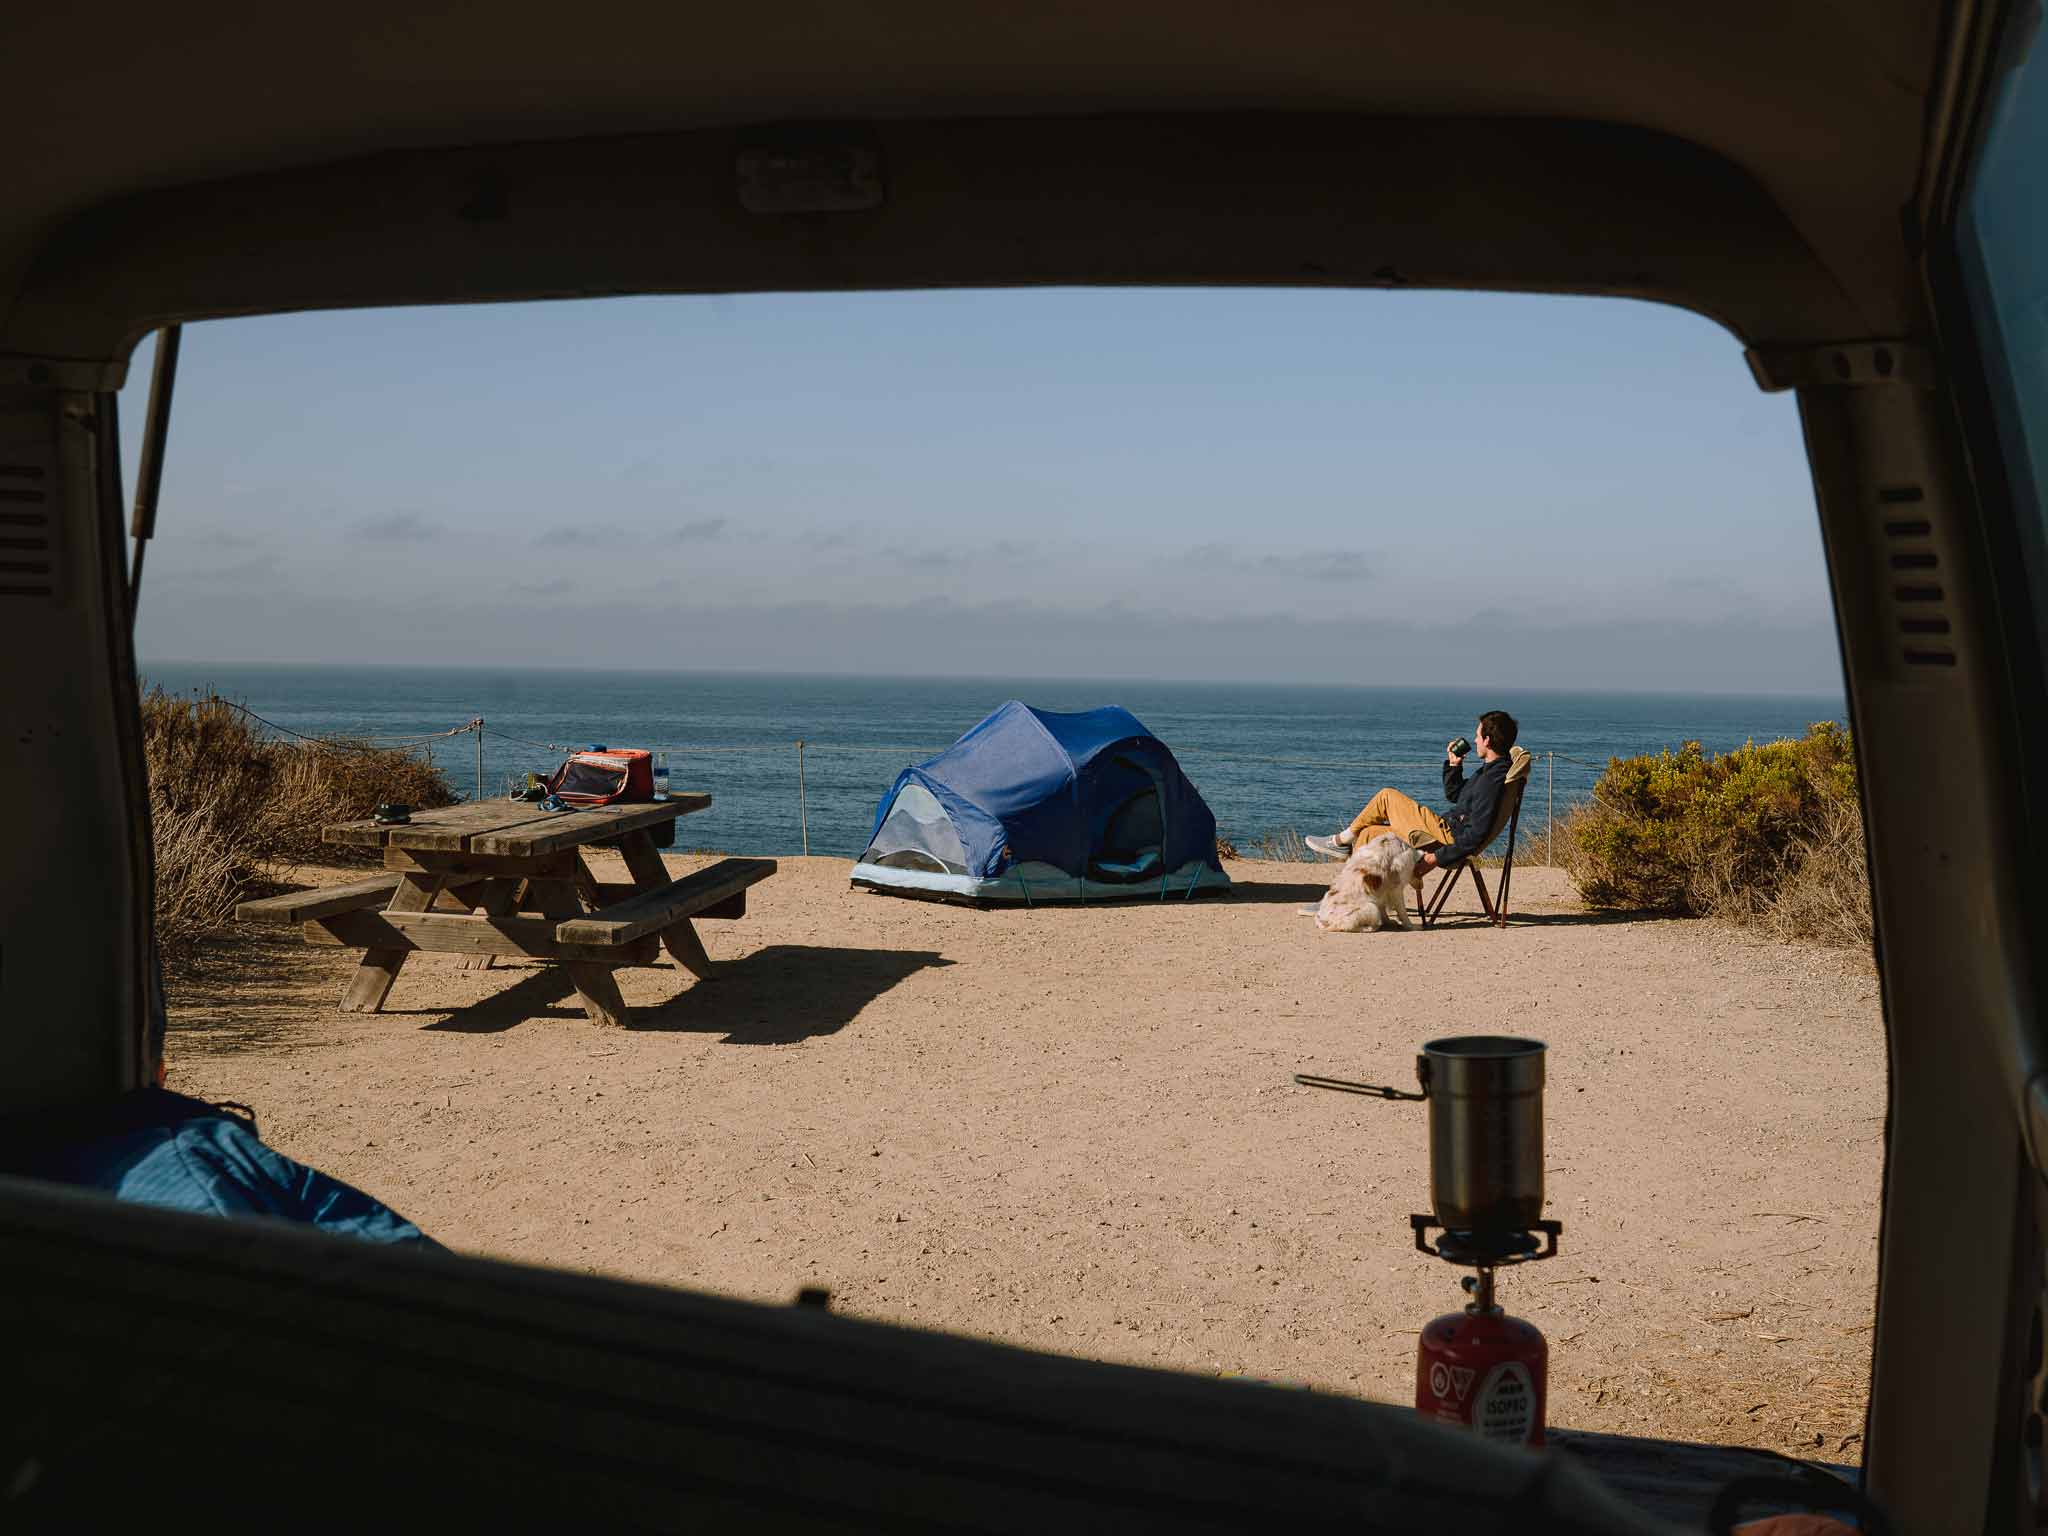 SURF rev tent beach coffee c6 outdoor ground tent mattress 